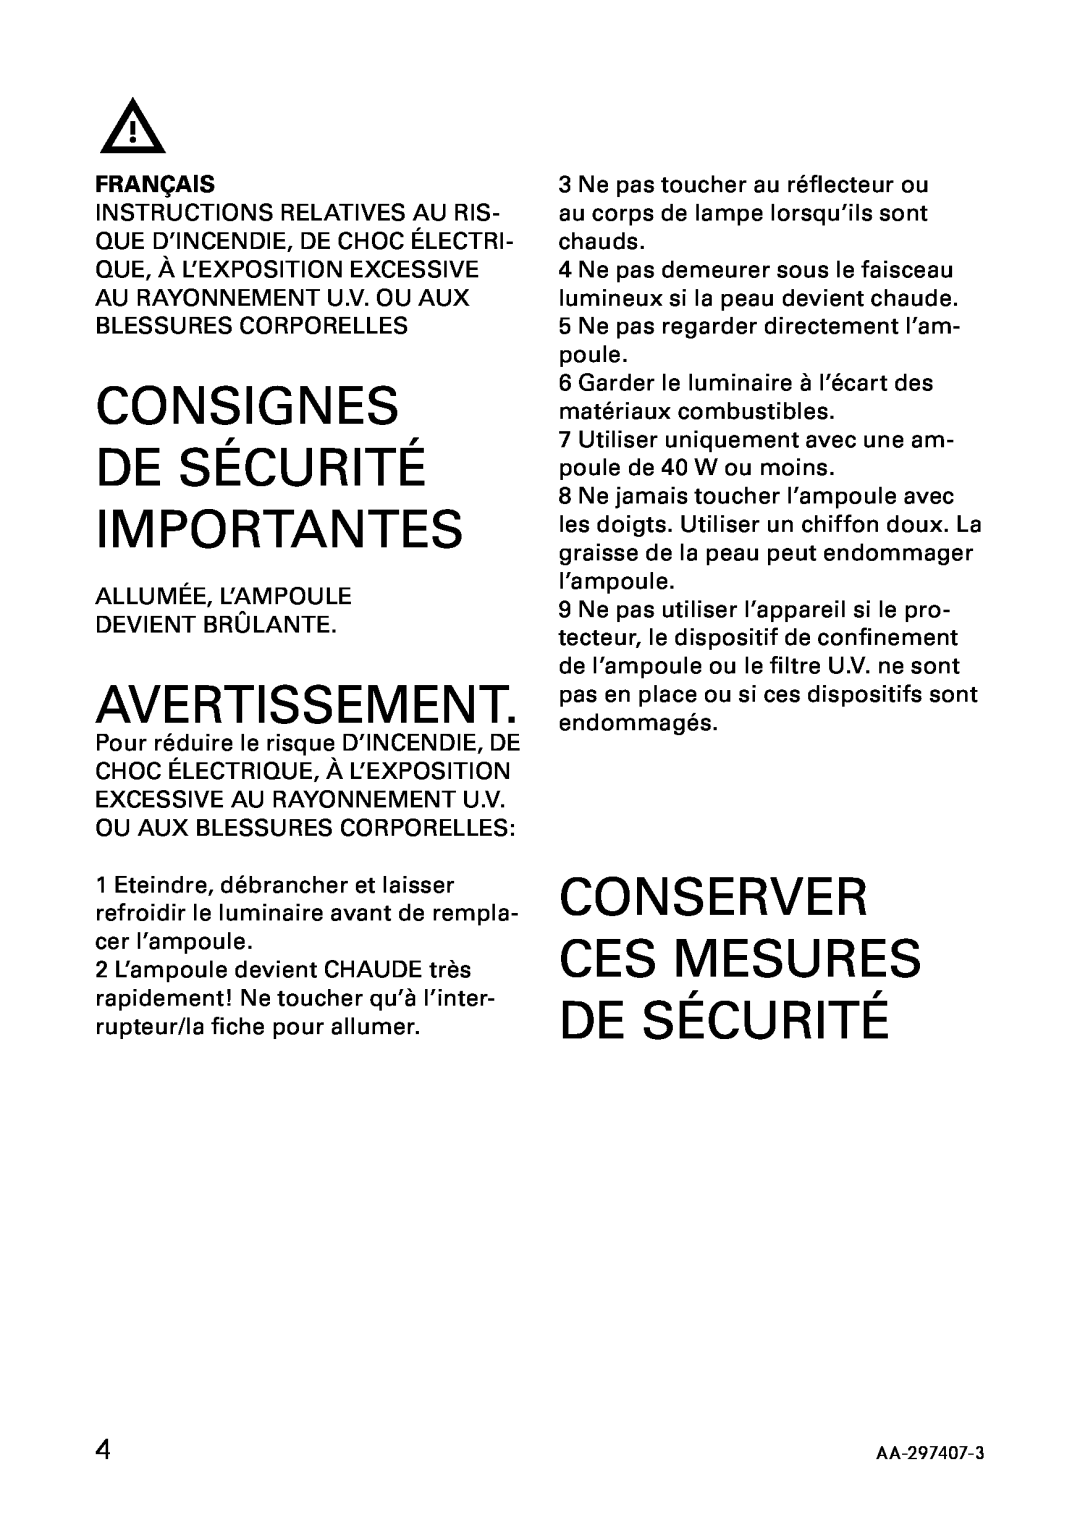 IKEA AA-297408-3 manual Consignes De Sécurité Importantes, Avertissement, Conserver Ces Mesures De Sécurité, Français 